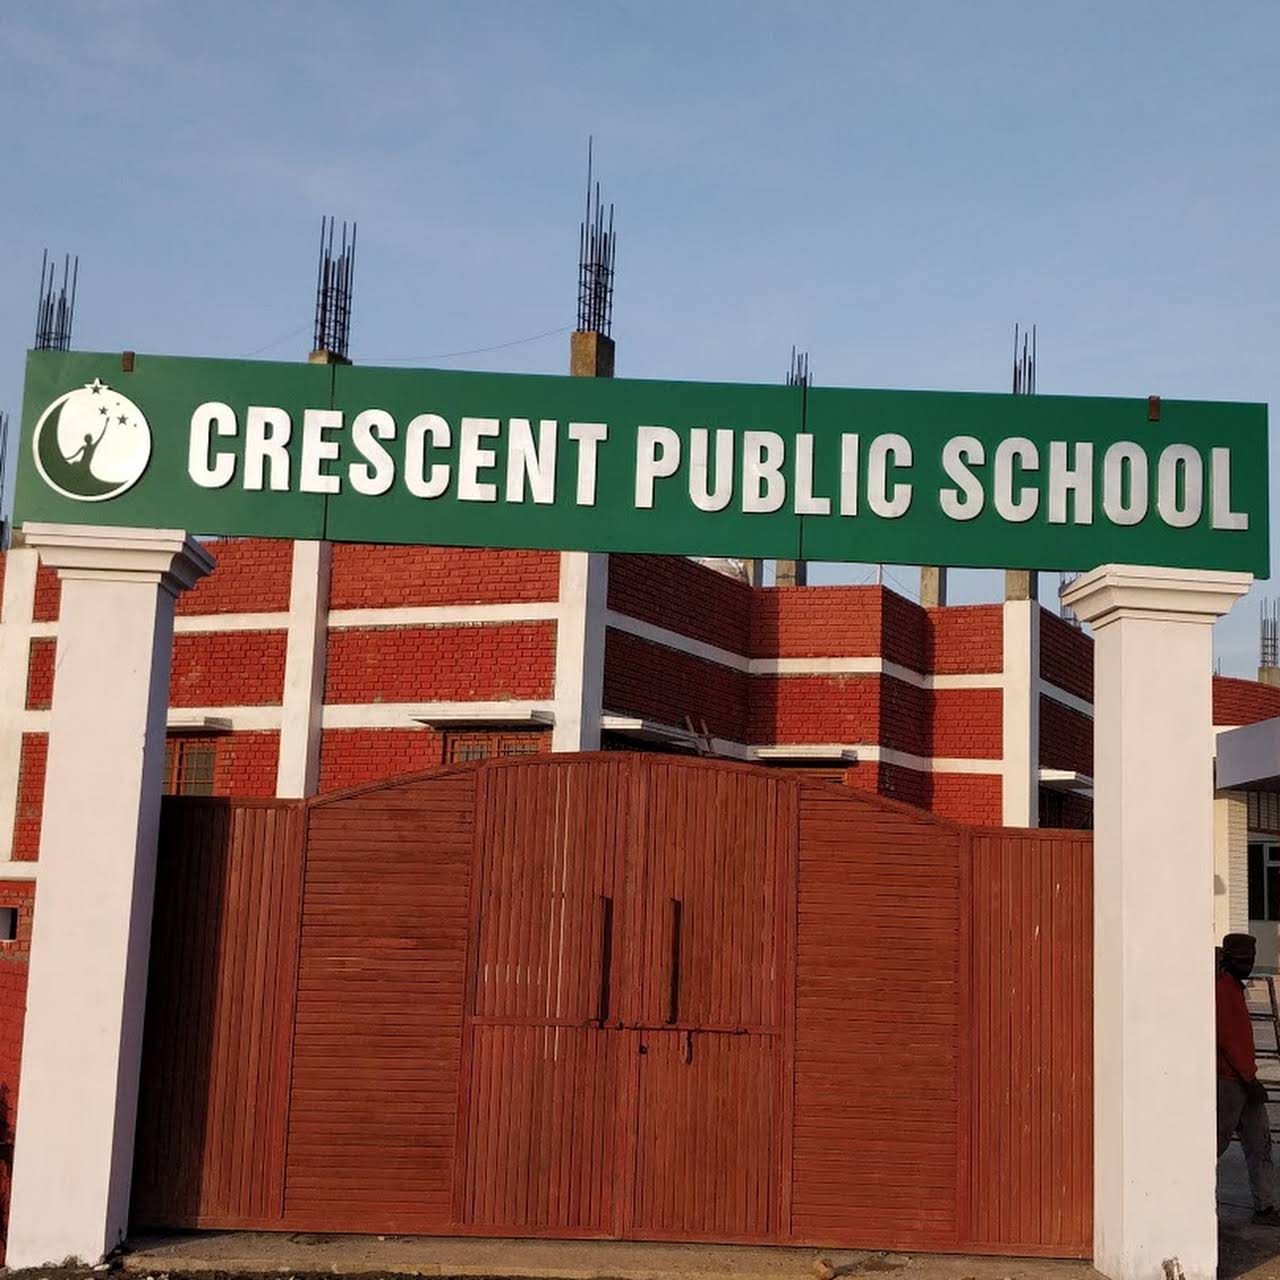 Crescent Public School|Schools|Education